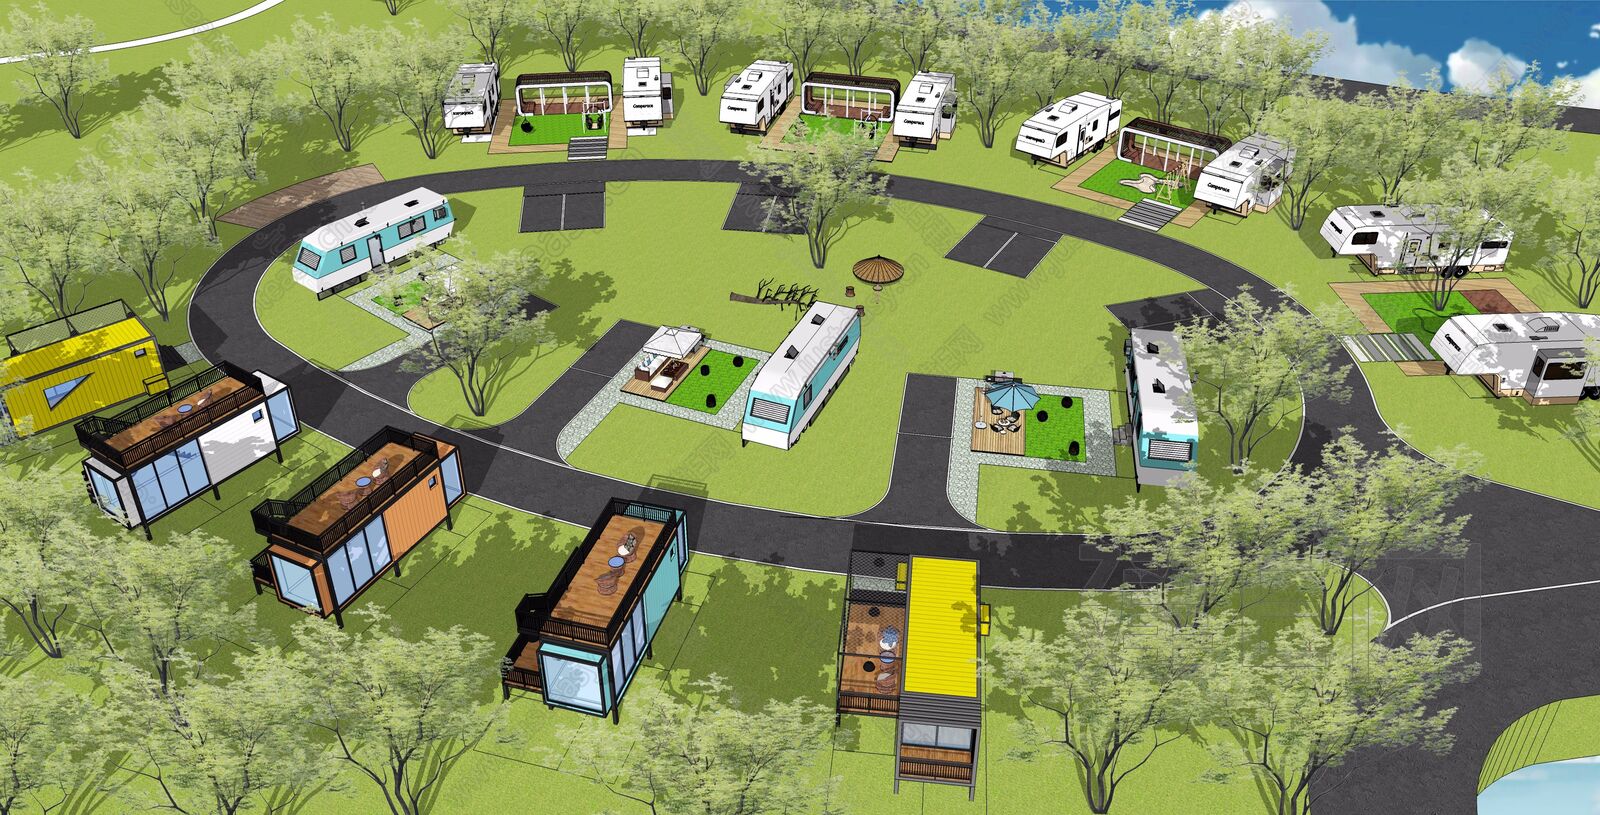 Rvbaba房车营地规划设计院——双鱼岛房车度假营地项目